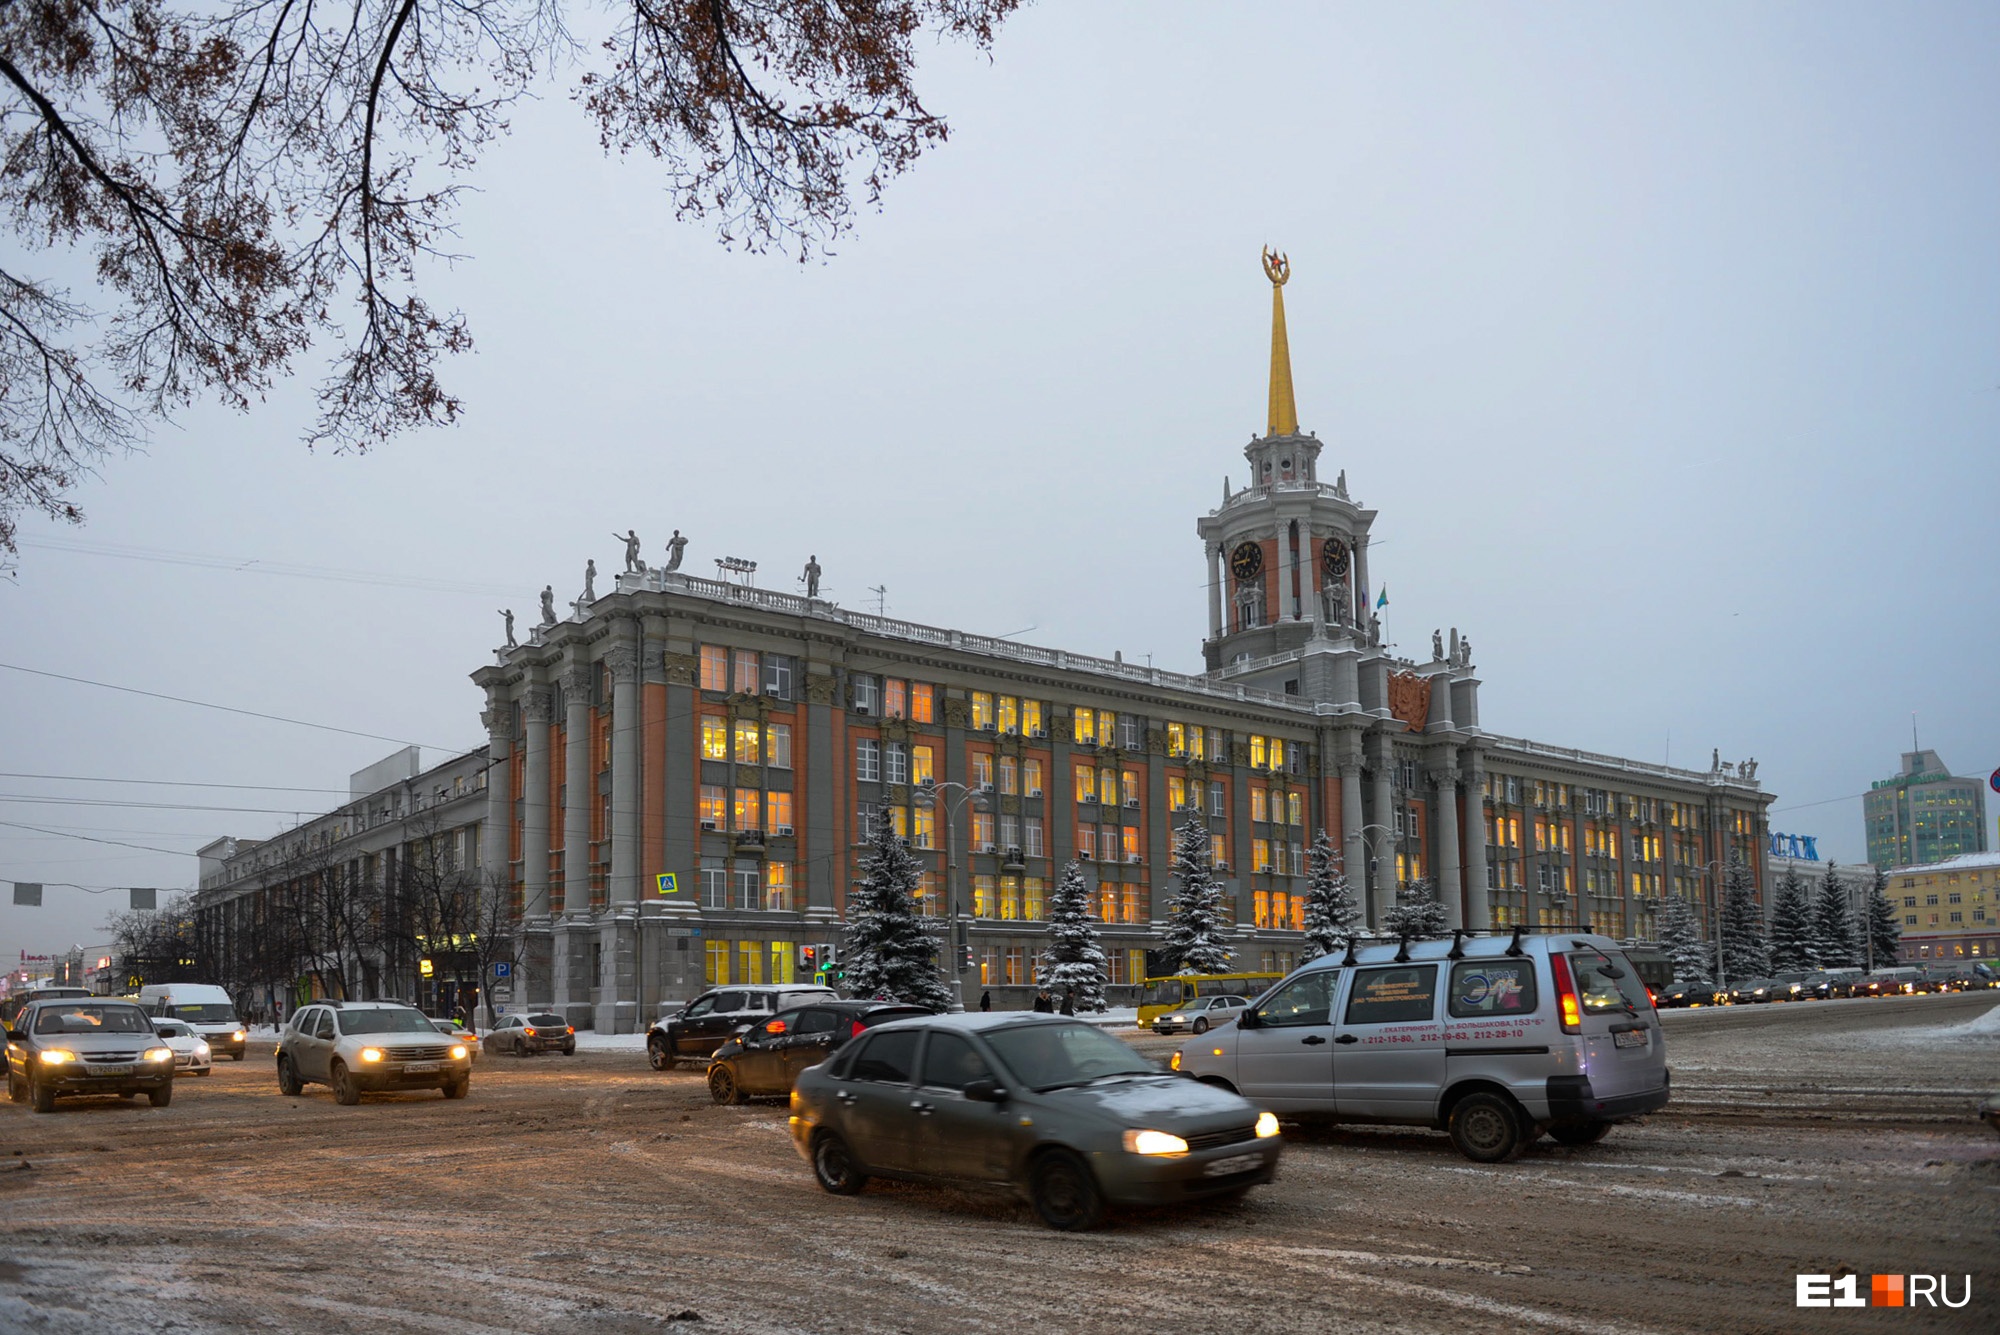 Свердловские власти вернули Екатеринбургу контроль над стройками. Что изменится для города?